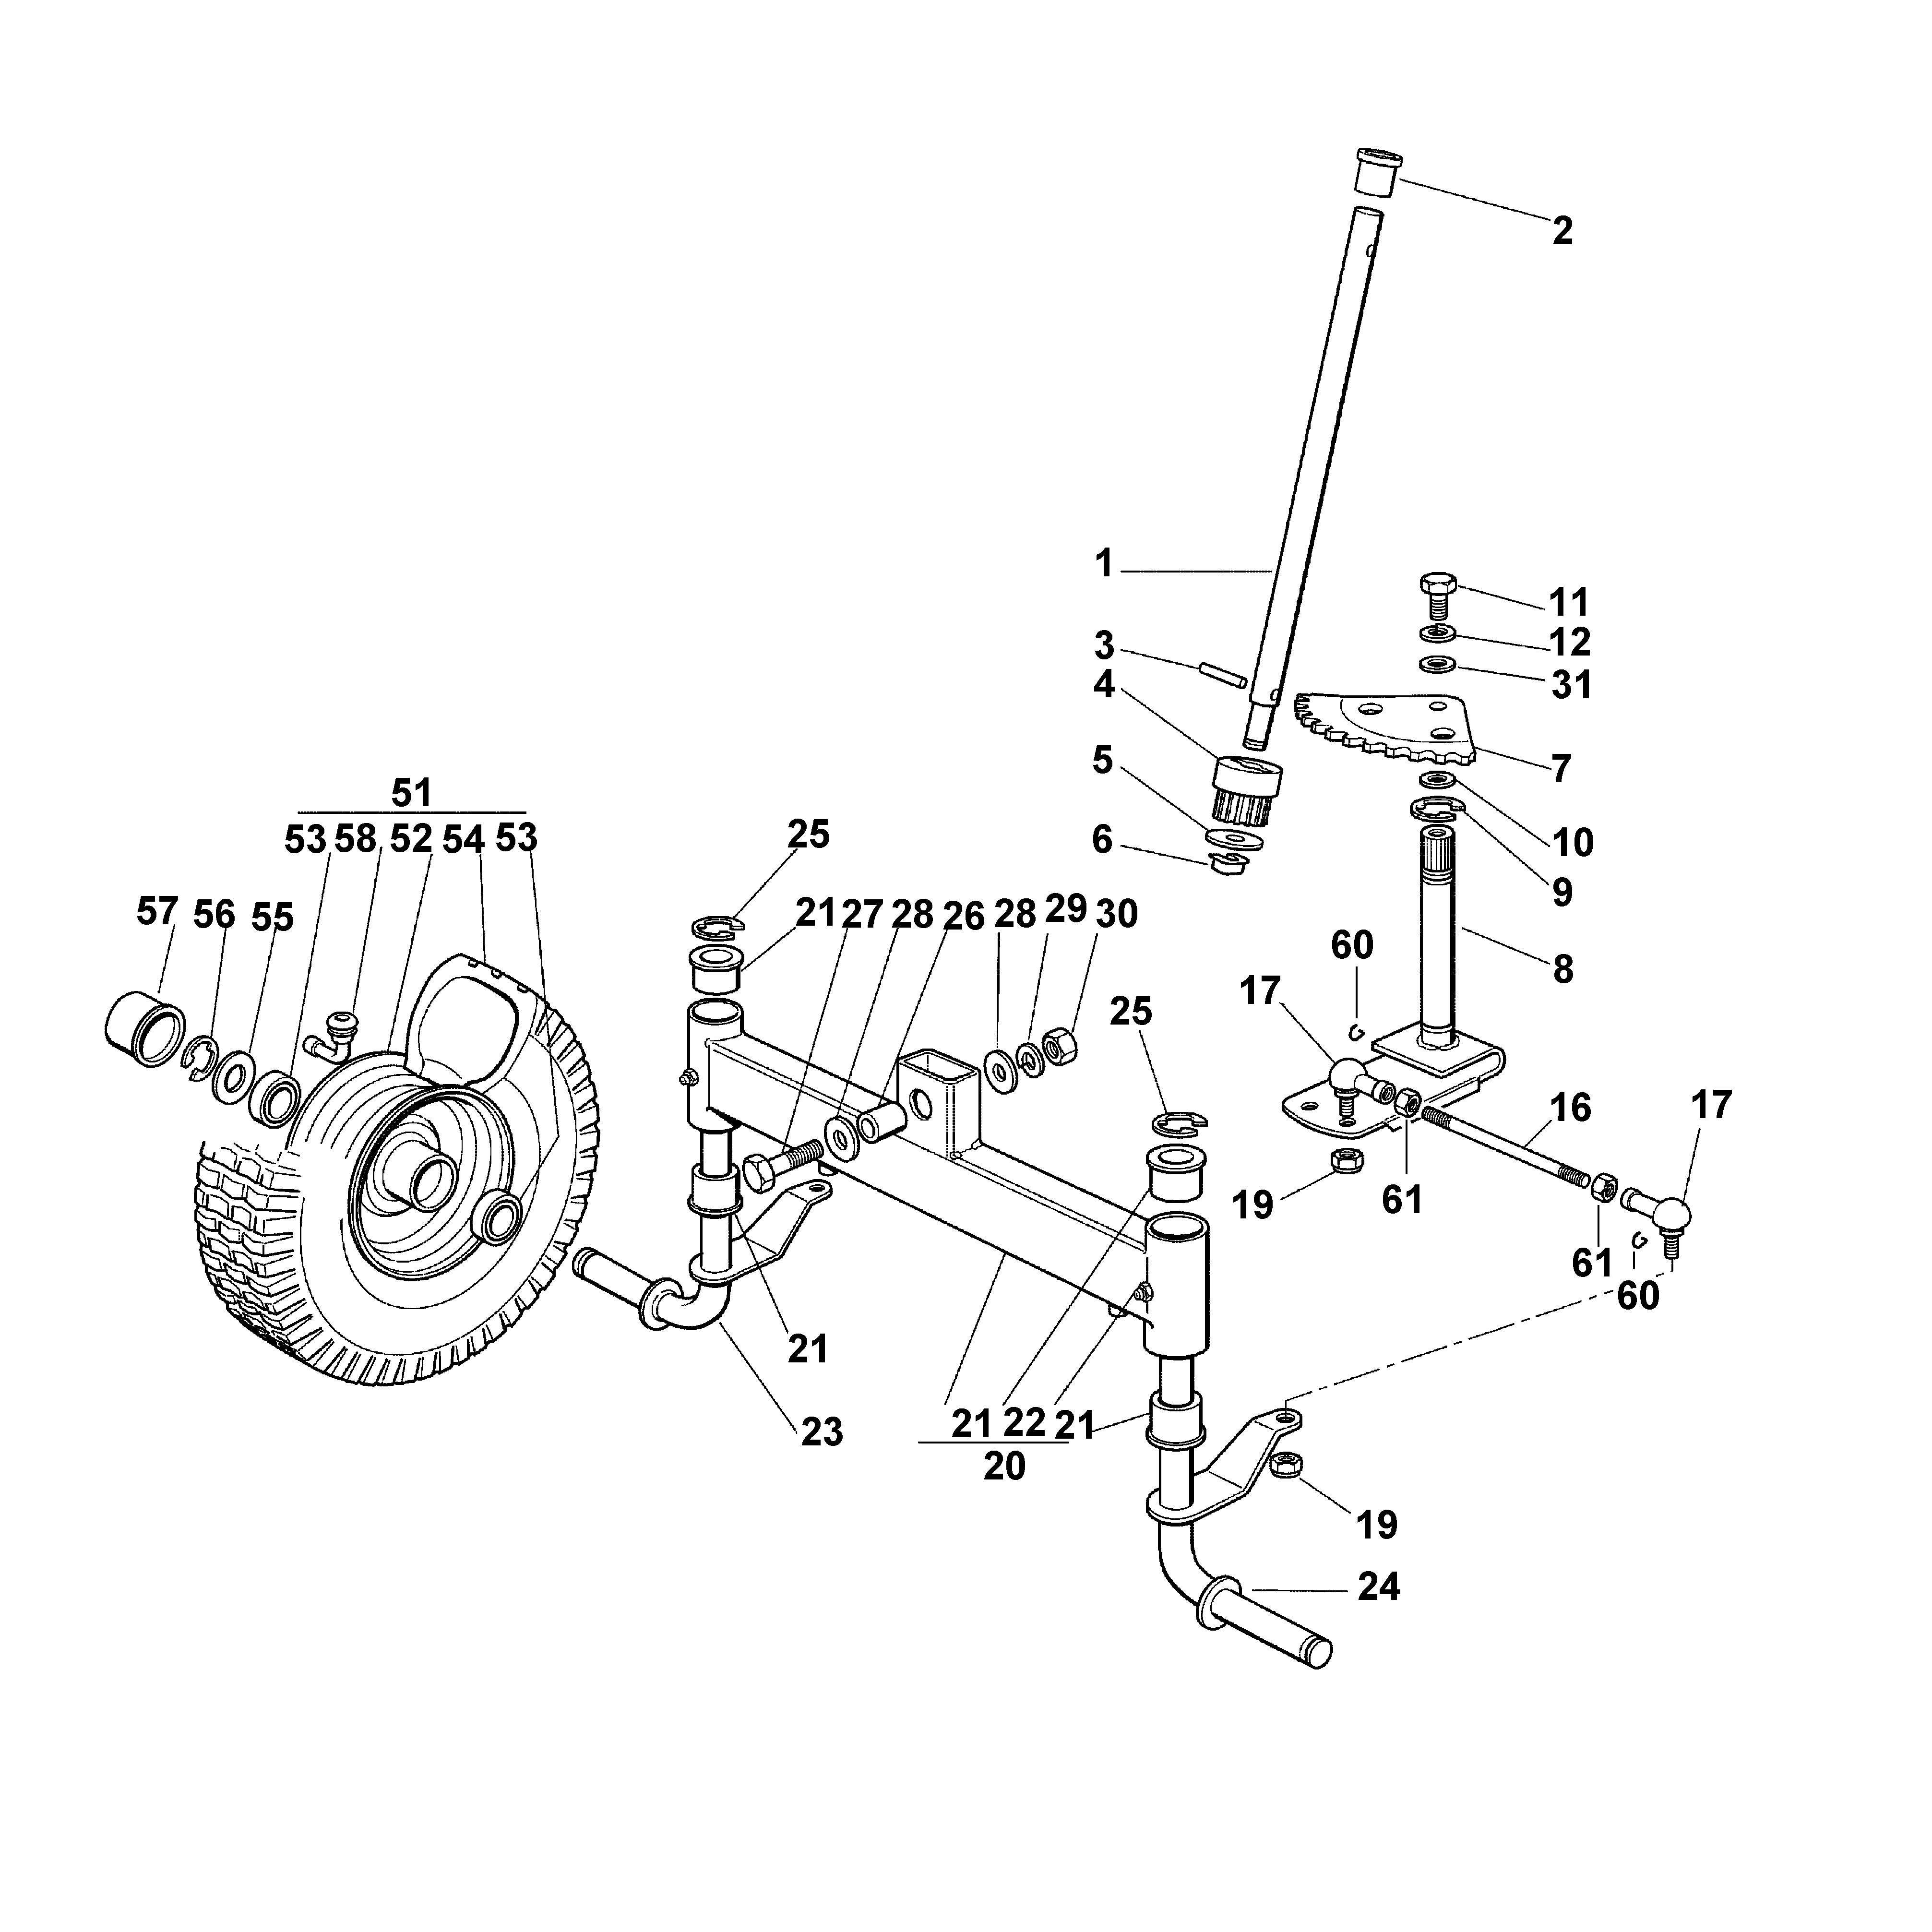 Рулевое управление гусеничного трактора Т: конструктивные особенности и устройство